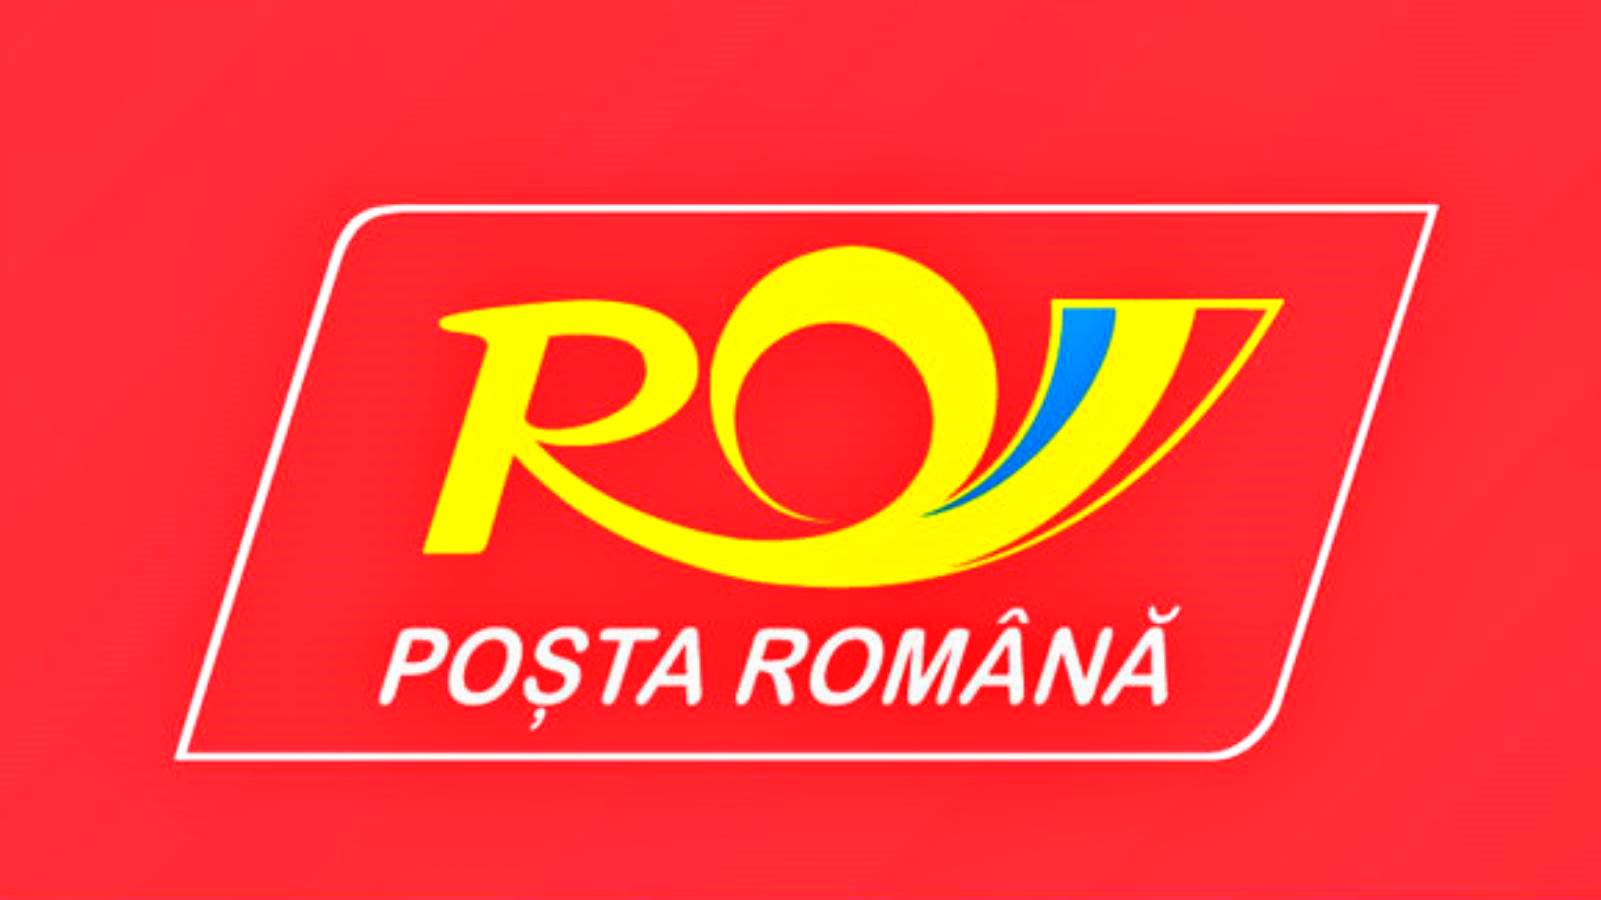 Au début de 2023, la Poste roumaine parle des réalisations de 2022